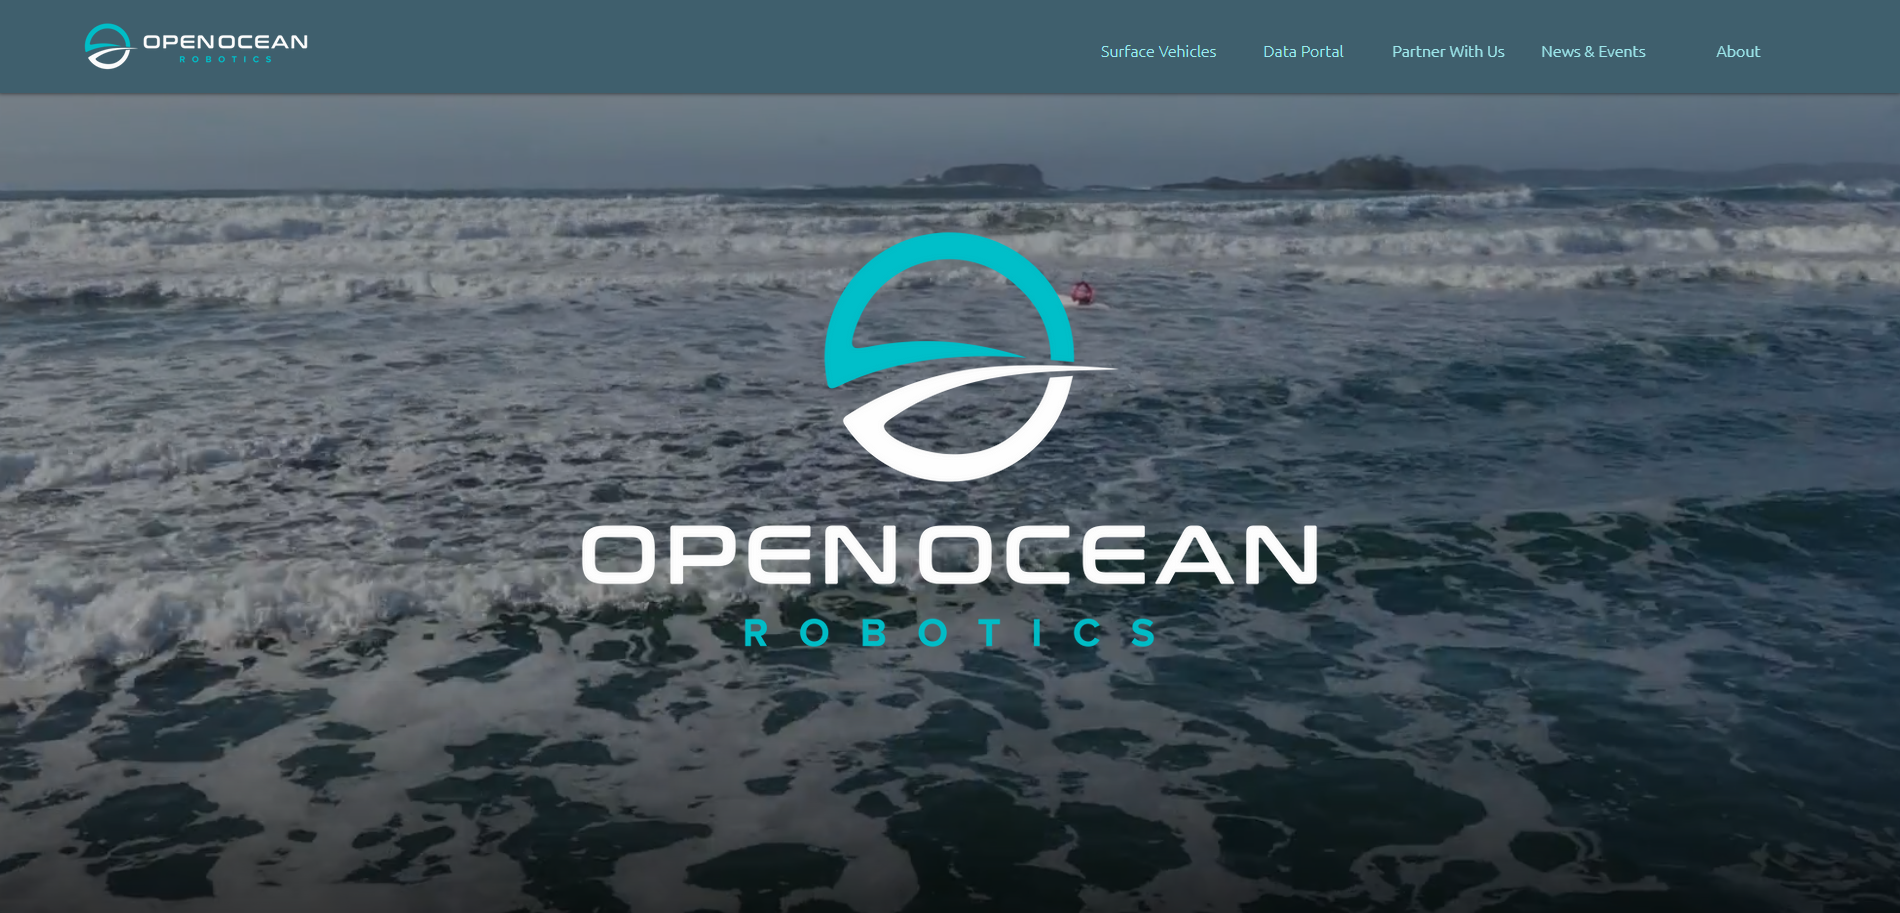 Open ocean robotics